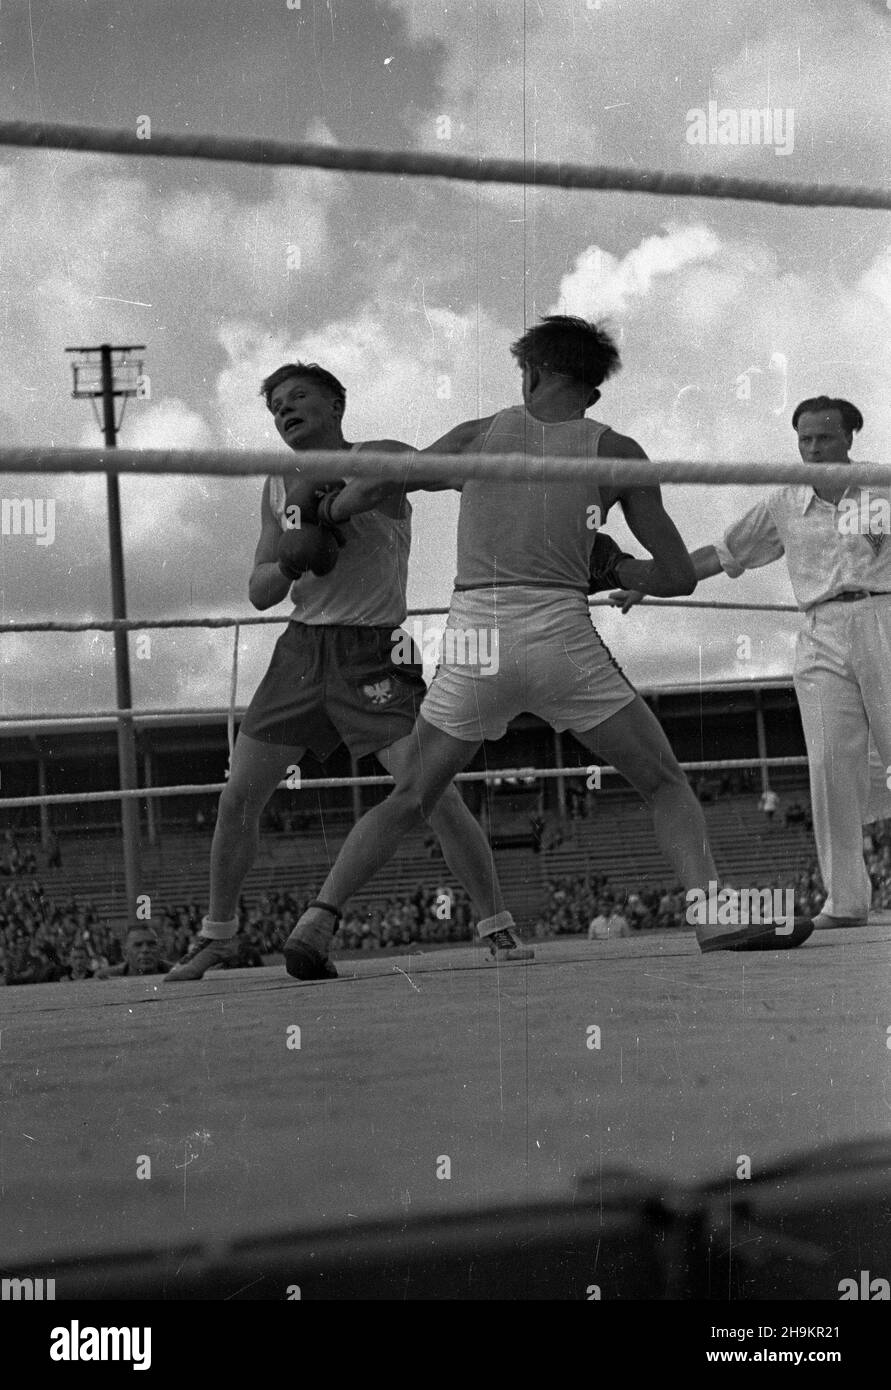 Wroc³aw, 1948-08-29. Stadion Olimpijski. Mecz bokserski pomiêdzy juniorami z Polski (w ciemnych spodenkach) i Czechos³owacji. Zwyciê¿y³a dru¿yna polska 13:3. Nz. pojedynek w wadze pó³œredniej pomiêdzy Stysia³em (L) i Mister¹ (P). ka  PAP      Wroclaw, Aug. 29, 1948. The Olympic Stadium. The boxing match between under 18's from Czechslovakia and Poland (in dark shorts). The Polish team wins 13:3. Pictured: a duel between Stysial (left) and Mistera (right) (welterweight).  ka  PAP Stock Photo